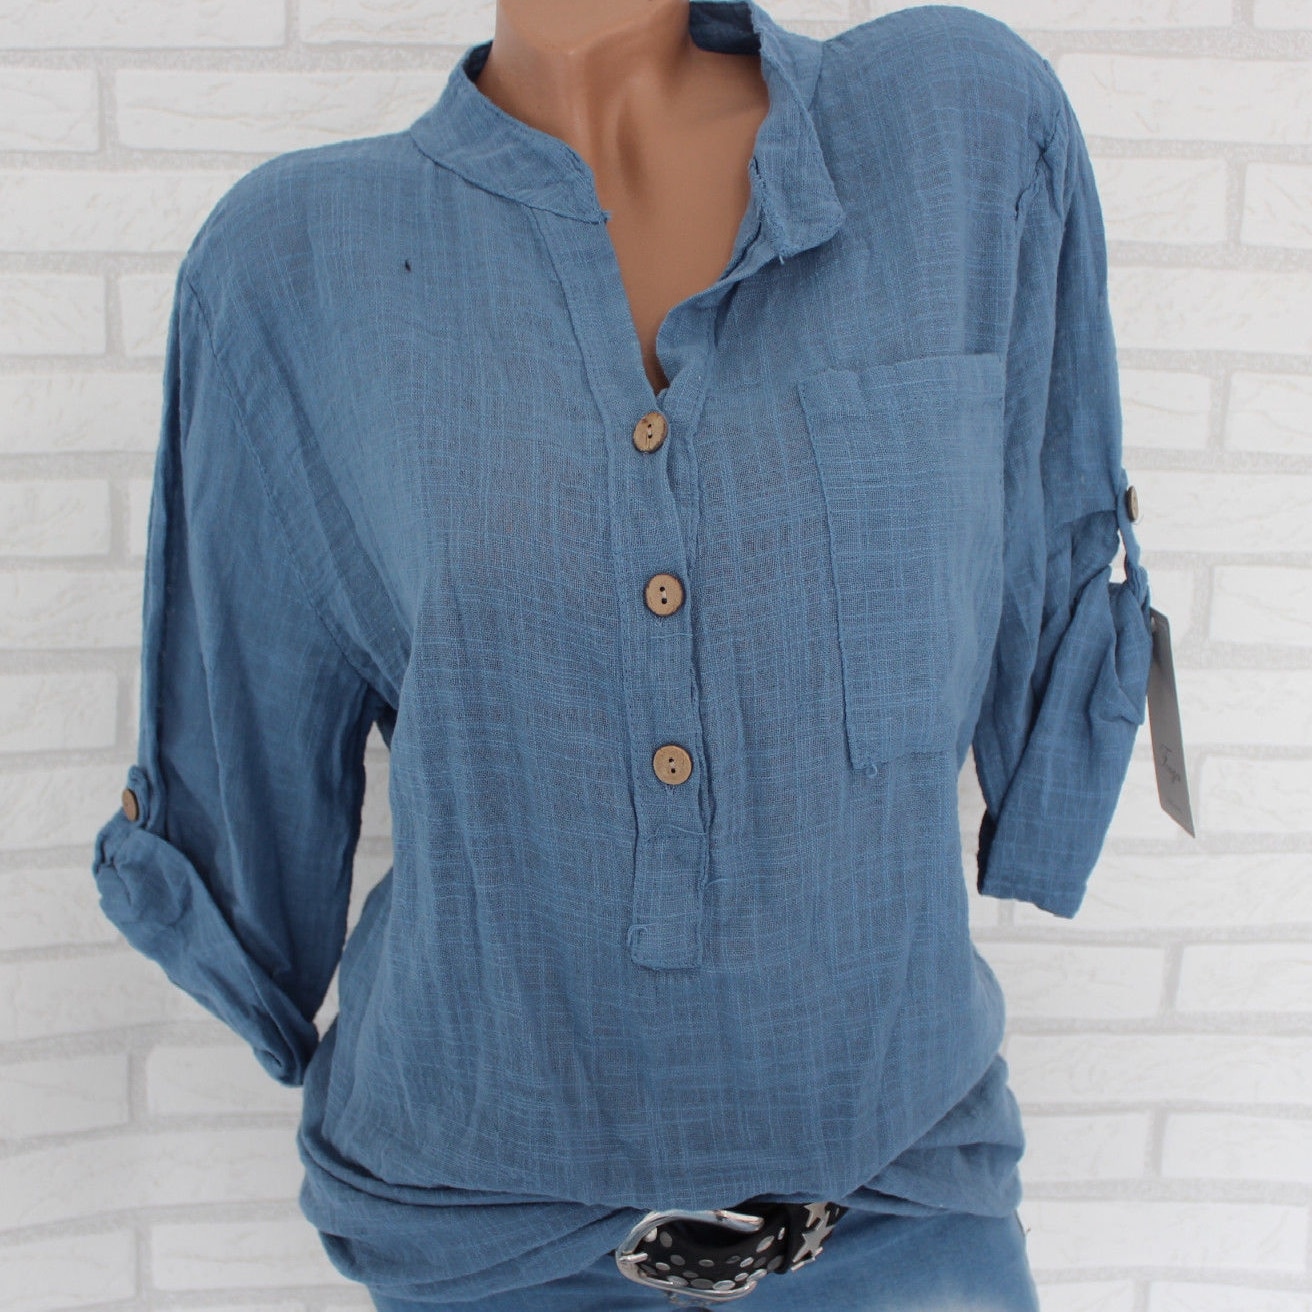 Blusa blanca de lino y algodón para mujer, camisa holgada de talla grande, con bolsillos y botones, color gris y azul, estilo Harajuku